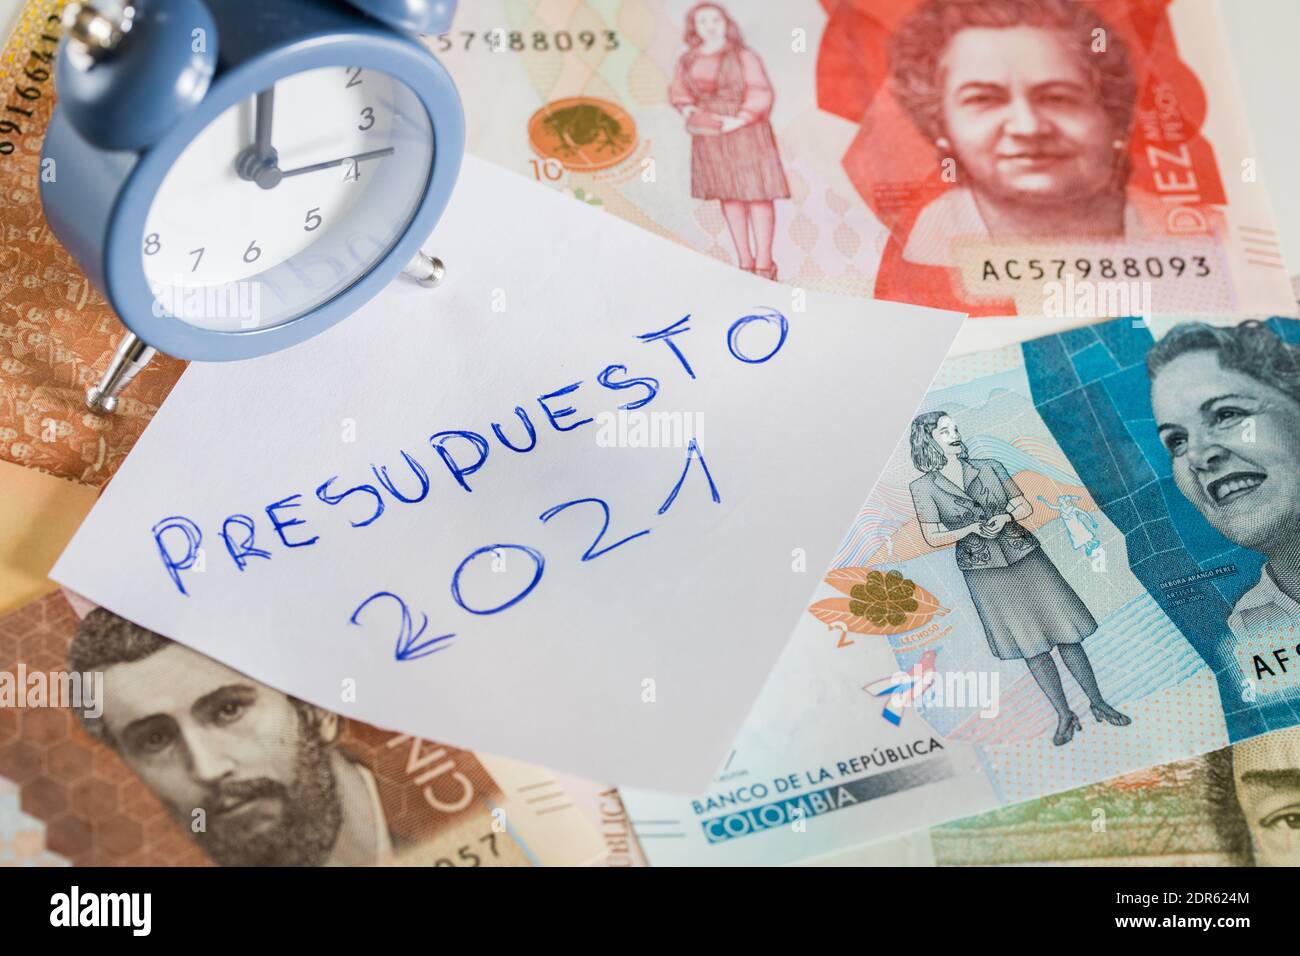 Handschriftliche Inschrift auf einem Blatt Papier in spanischer Sprache 'Presupuesto 2021', die den Haushalt im neuen Jahr bezeichnet. Kolumbianisches Geld und der Alarm-Block Stockfoto